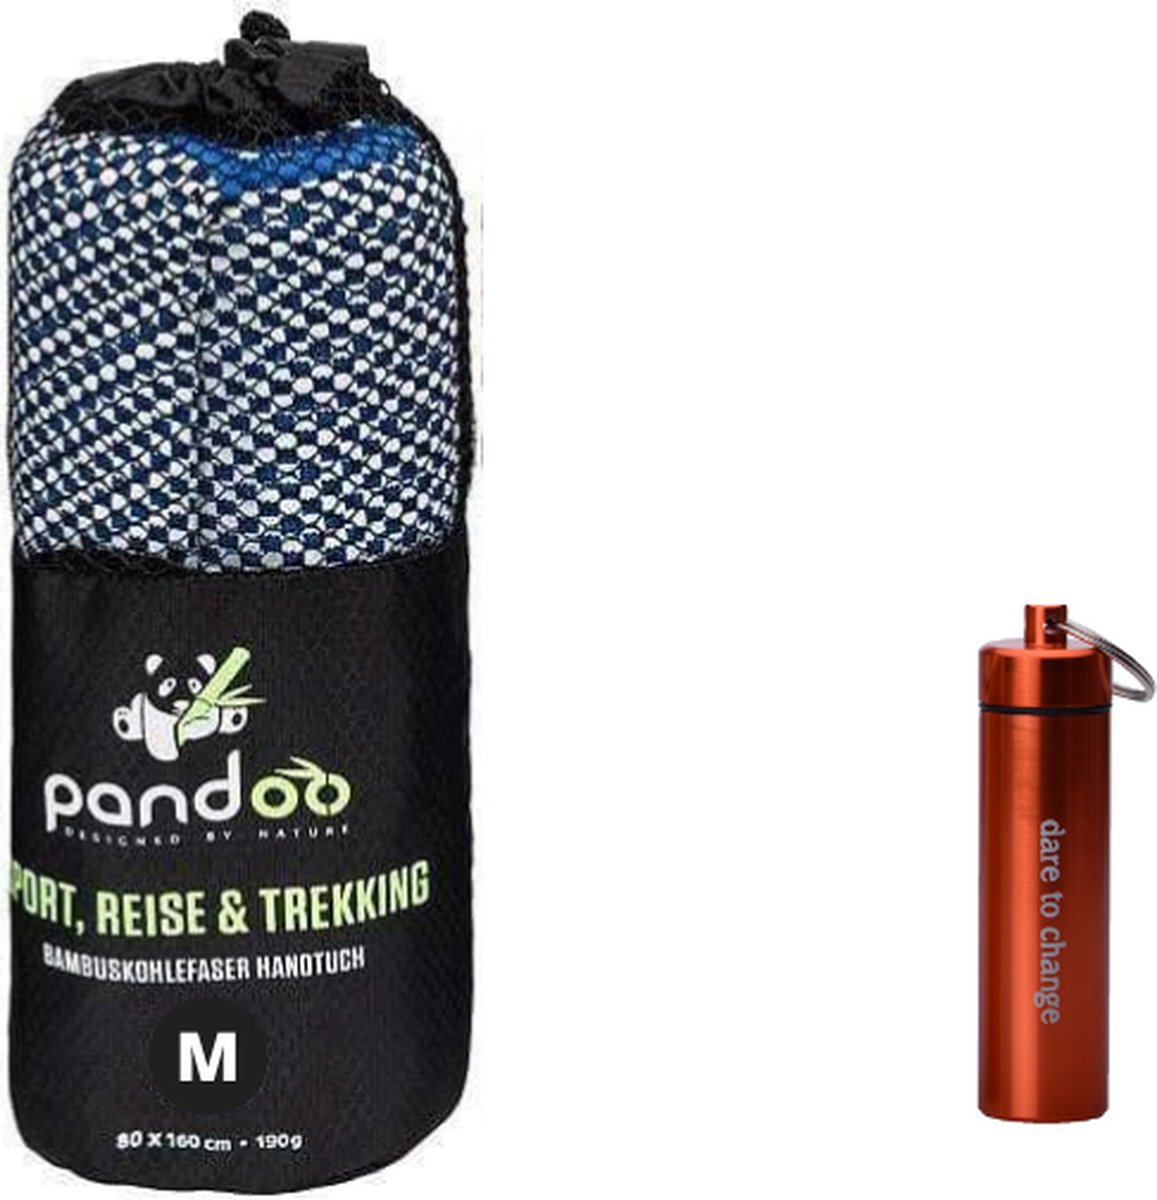 Pandoo Reishanddoek Blauw - M - Sneldrogend - Bamboevezel - Compact - Absorberend - Gecomprimeerde handdoekjes